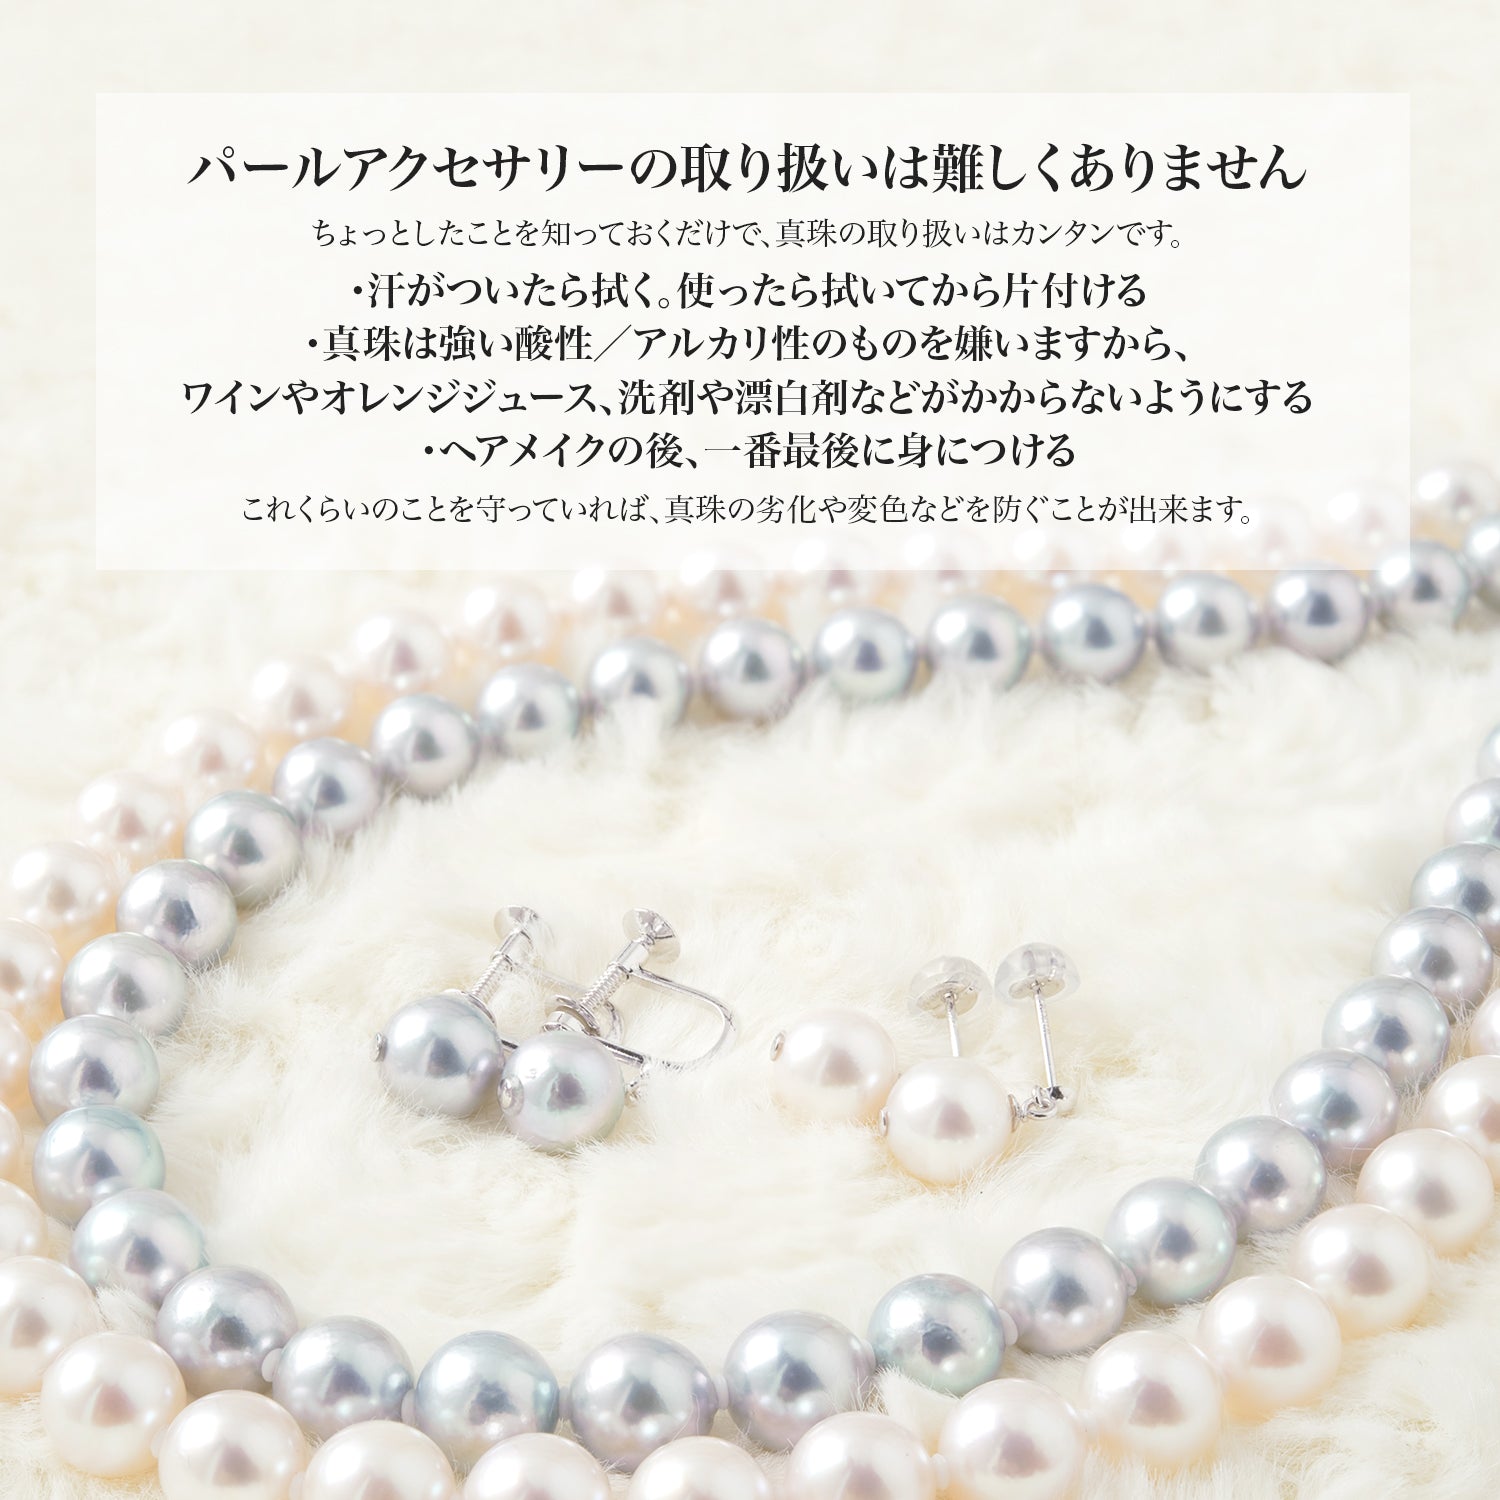 珍珠 2WAY 手链滑动调节器白色 5.0-7.5 毫米黄铜铑 Akoya 珍珠 (4044)